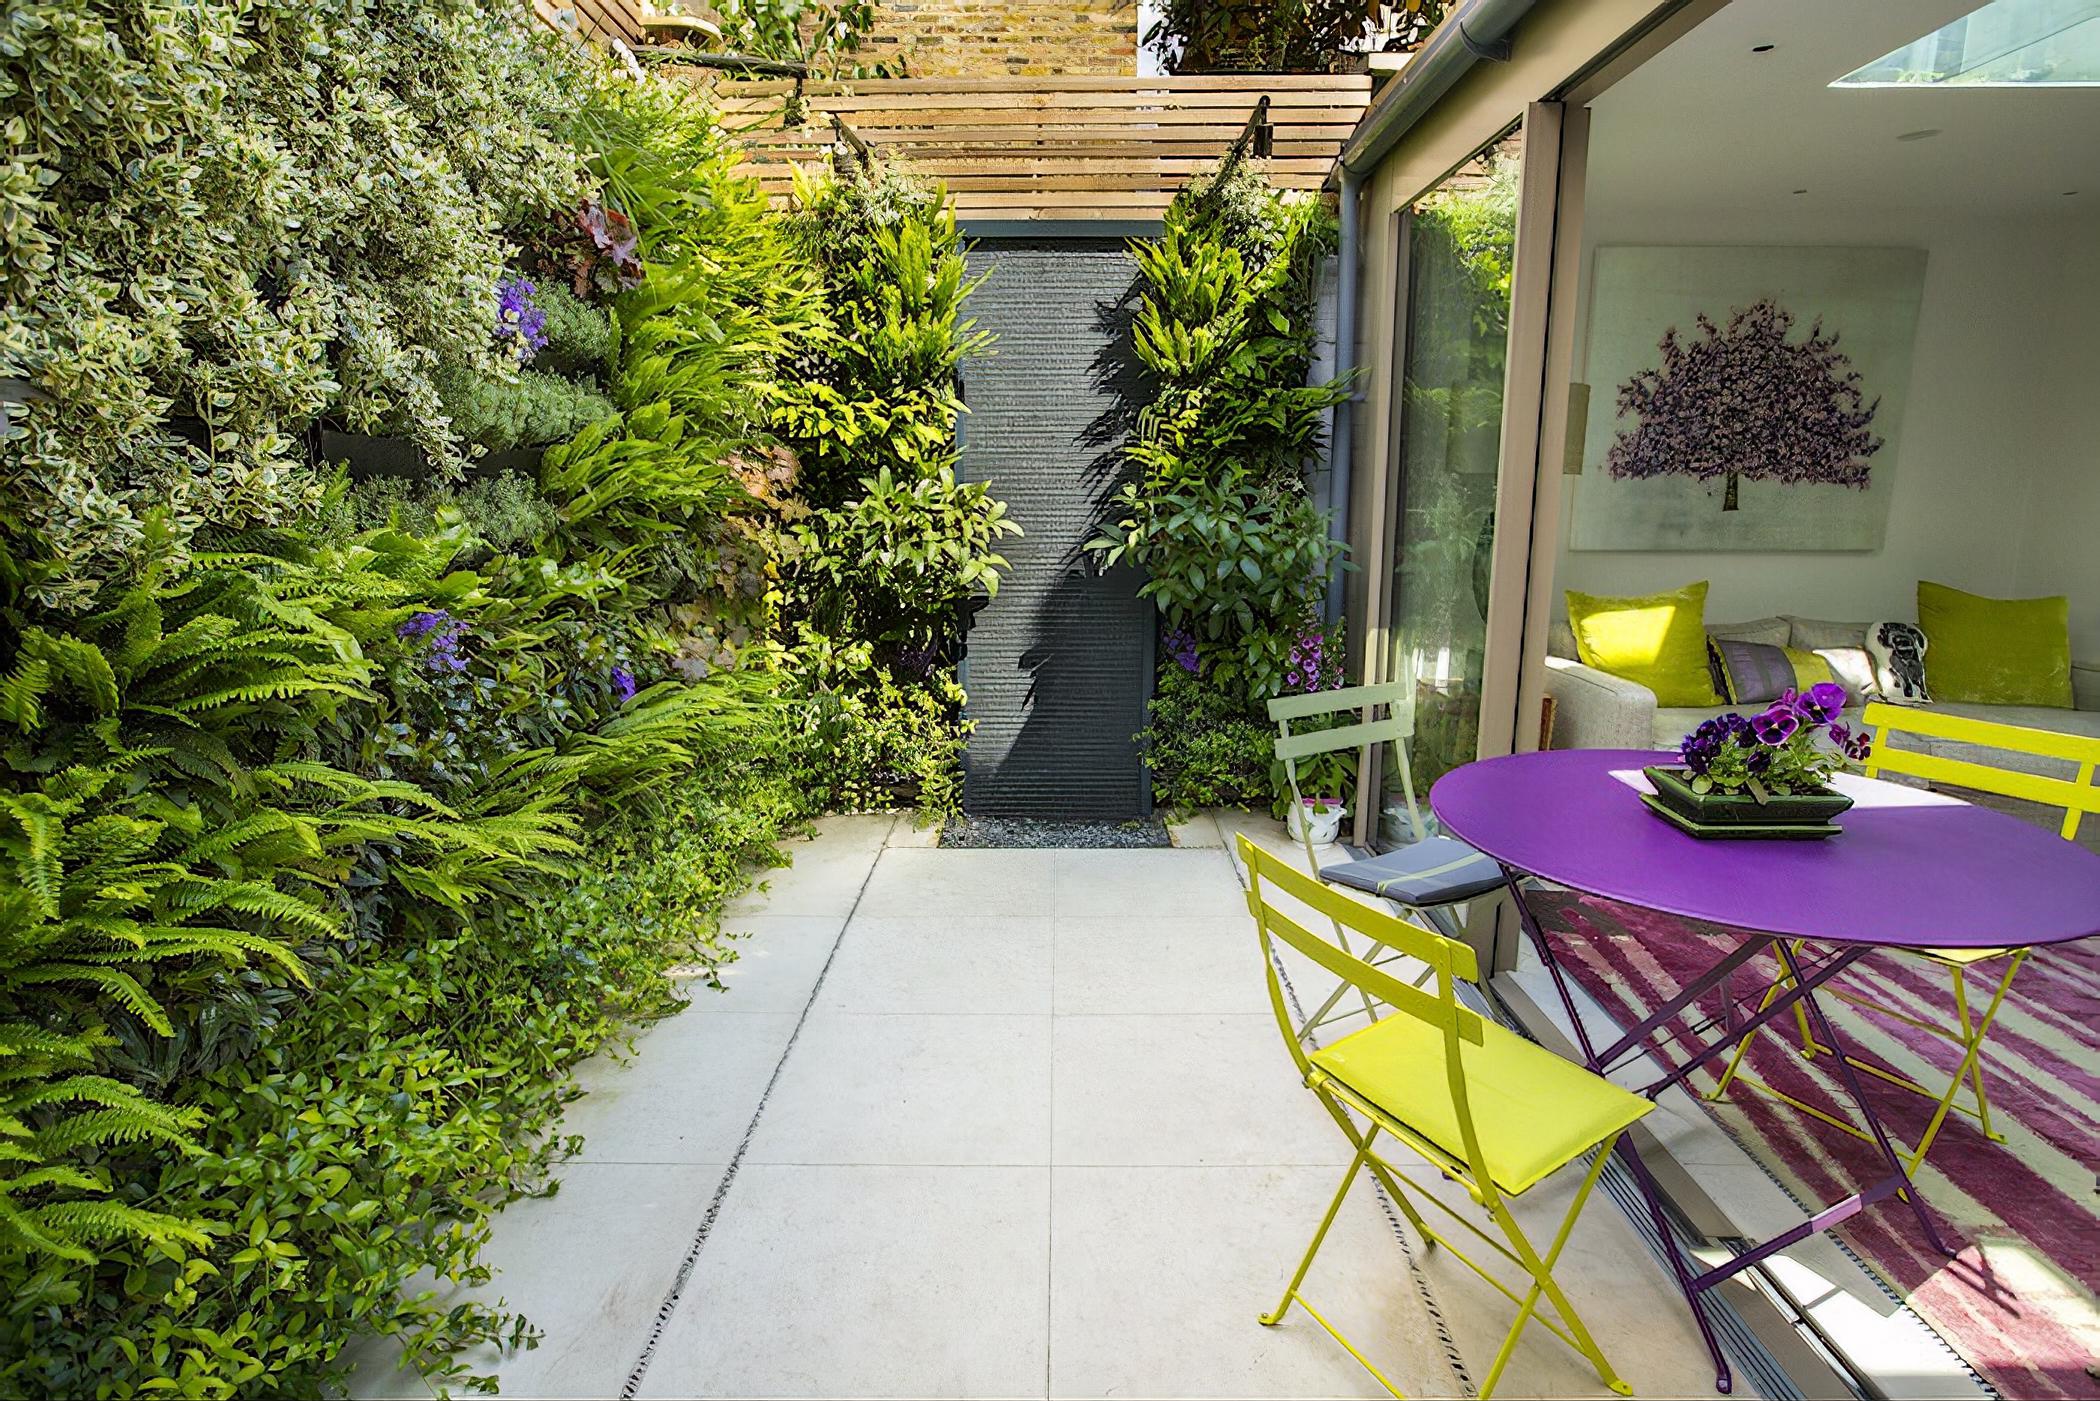 Secluded City Oasis by London based garden designer Maïtanne Hunt